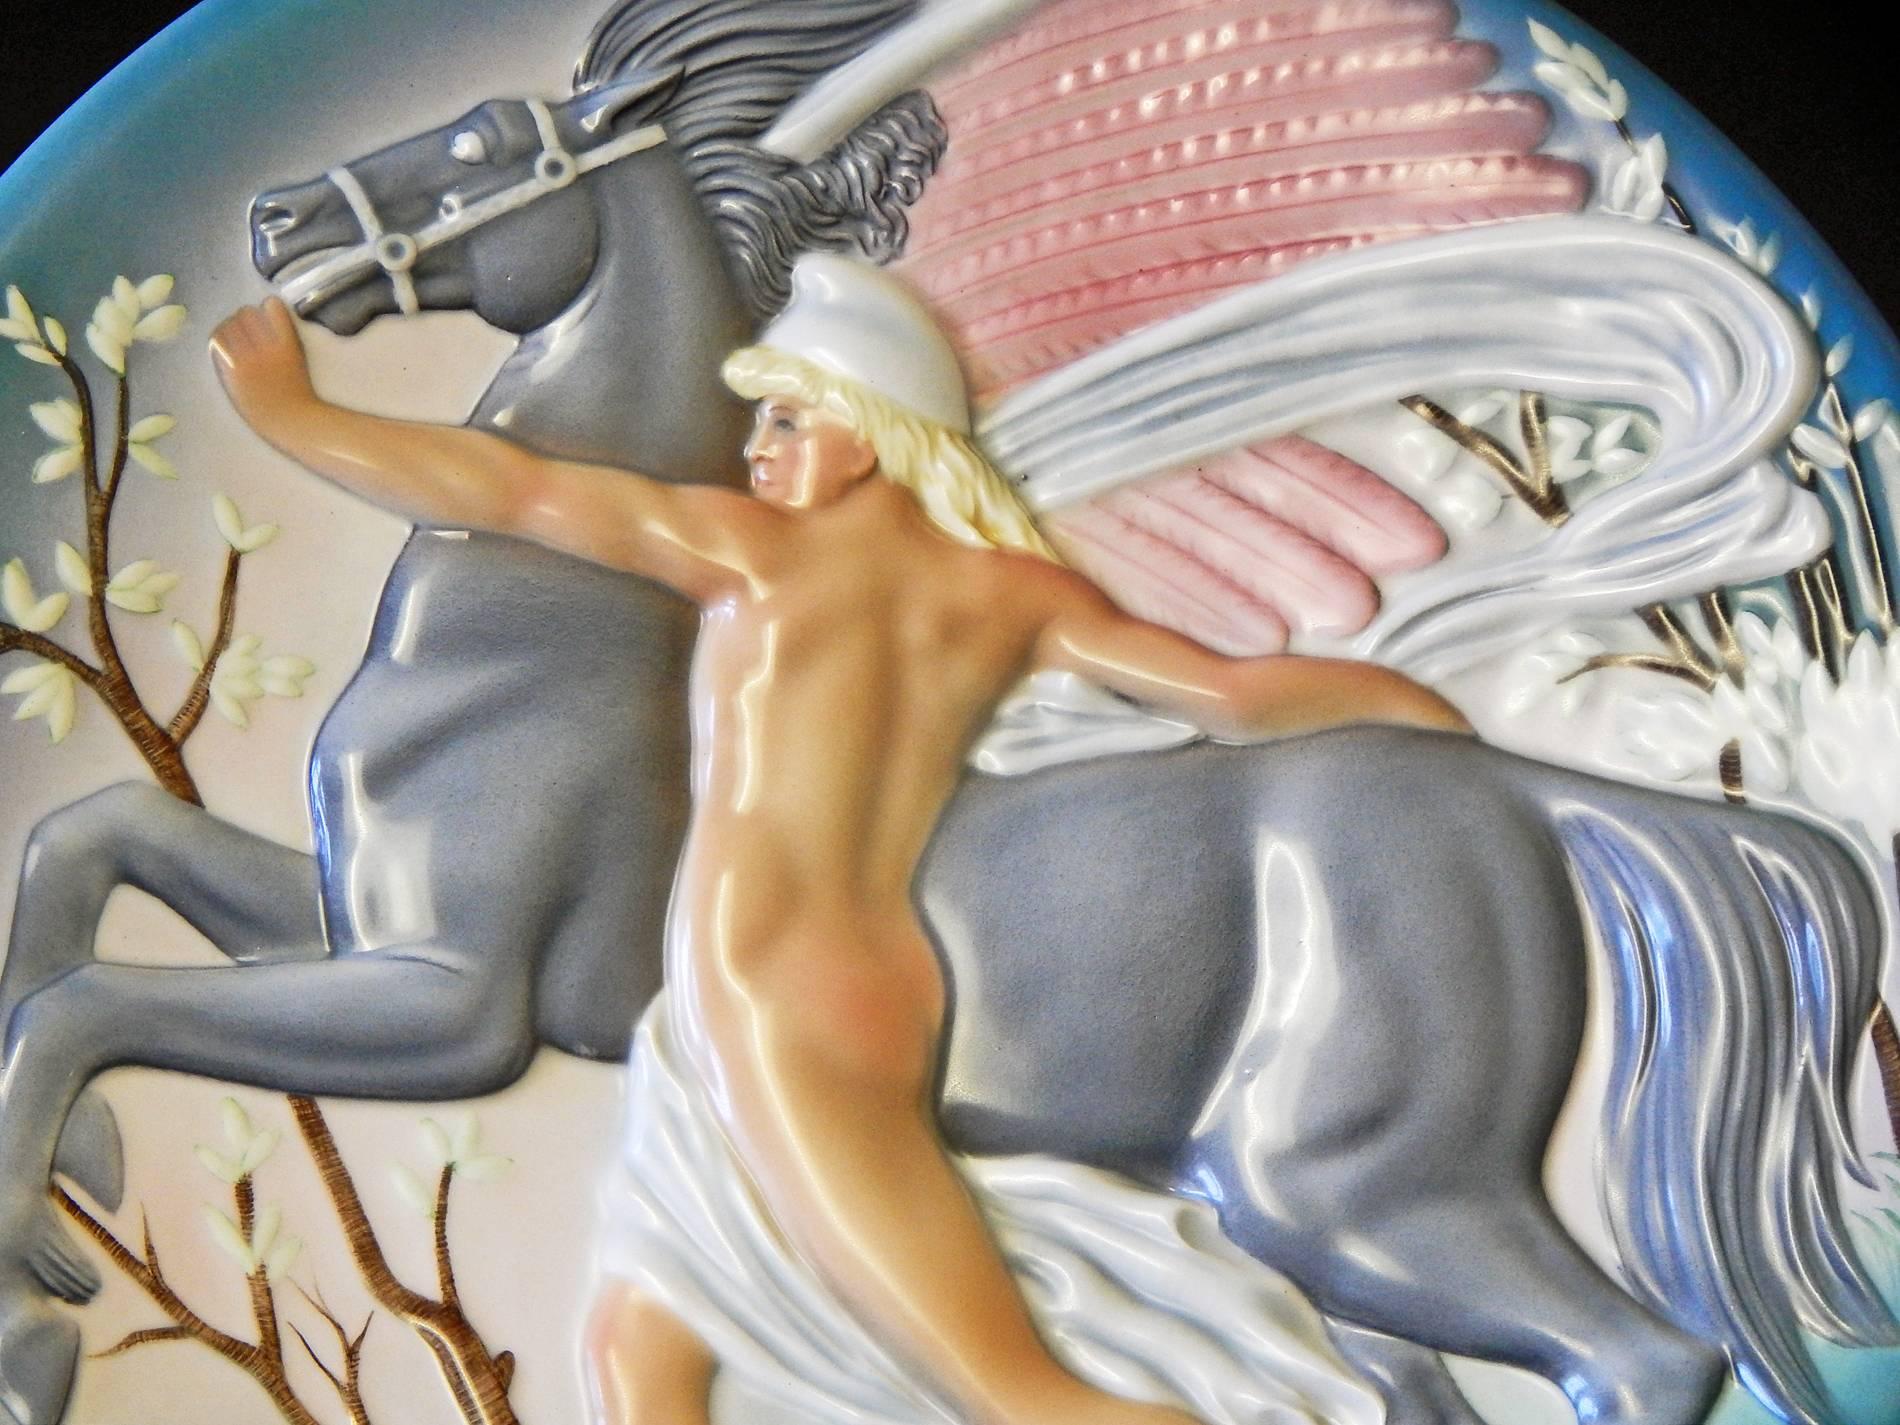 Magnifiquement et subtilement émaillée dans des tons de gris, vert, rose et beige, cette étonnante rondelle sculpturale Art Déco représente Bellérophon, une figure masculine nue de la mythologie grecque, retenant un Pégase ailé dans un paysage